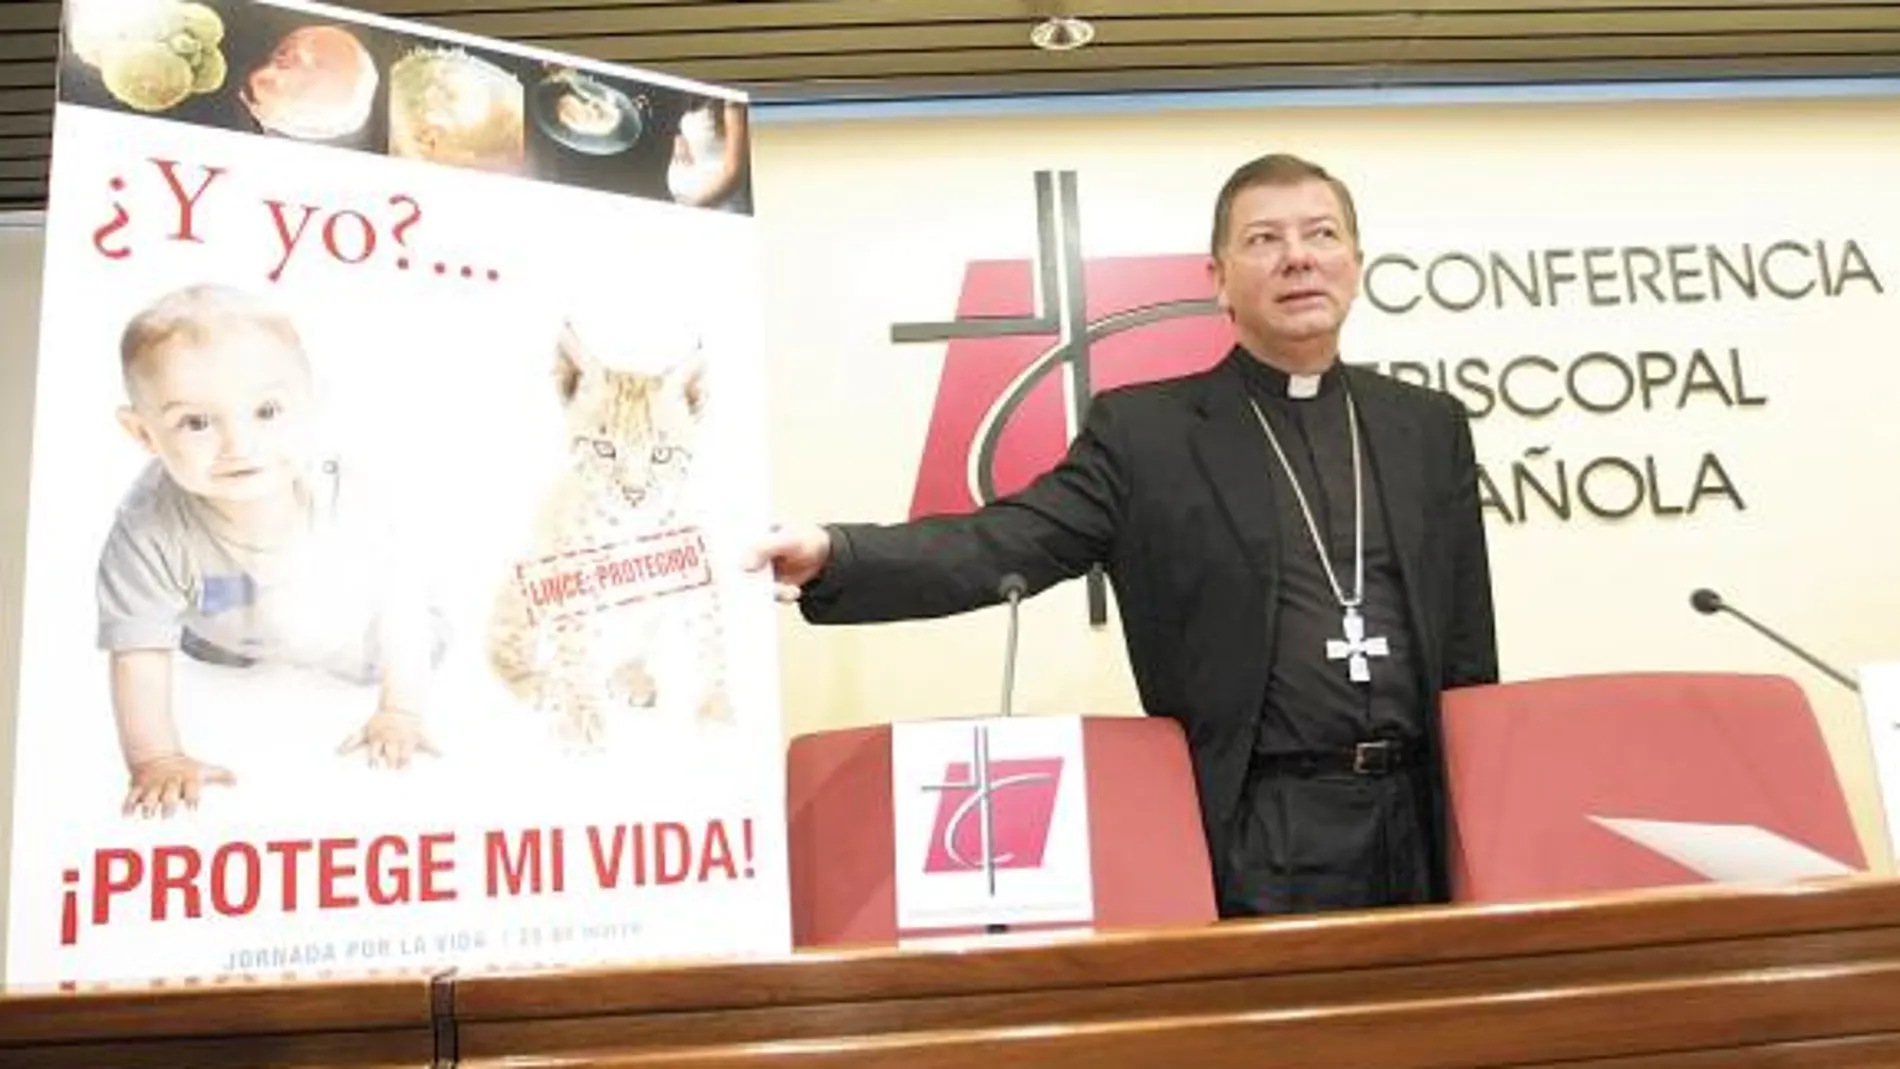 Martínez Camino, secretario general y portavoz de la Conferencia Episcopal, presentaba el pasado 16 de marzo el cartel de la Iglesia contra el aborto